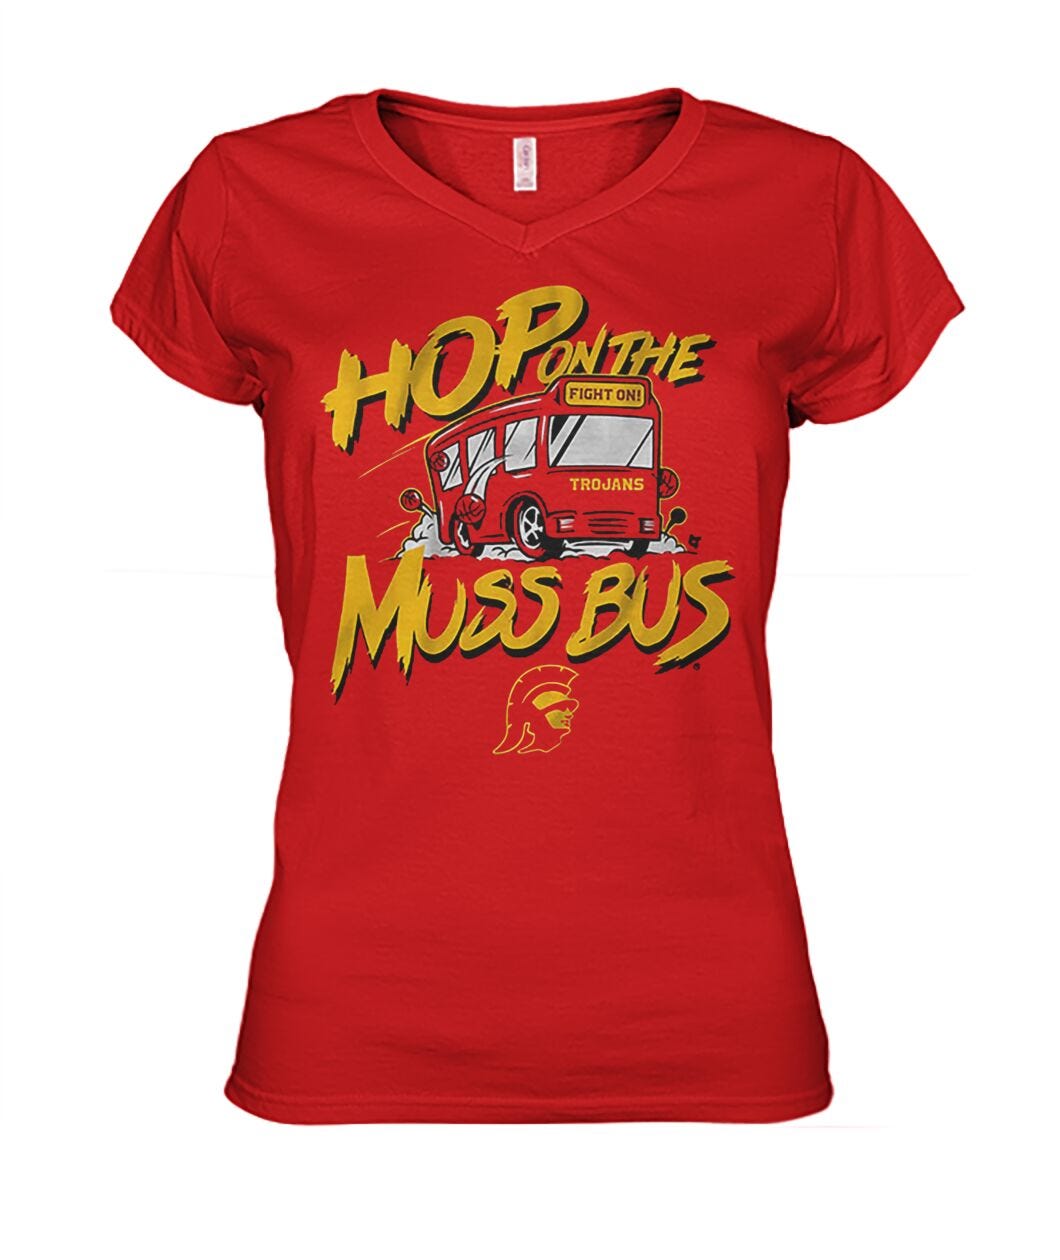 USC Basketball Hop on the Muss Bus Shirt